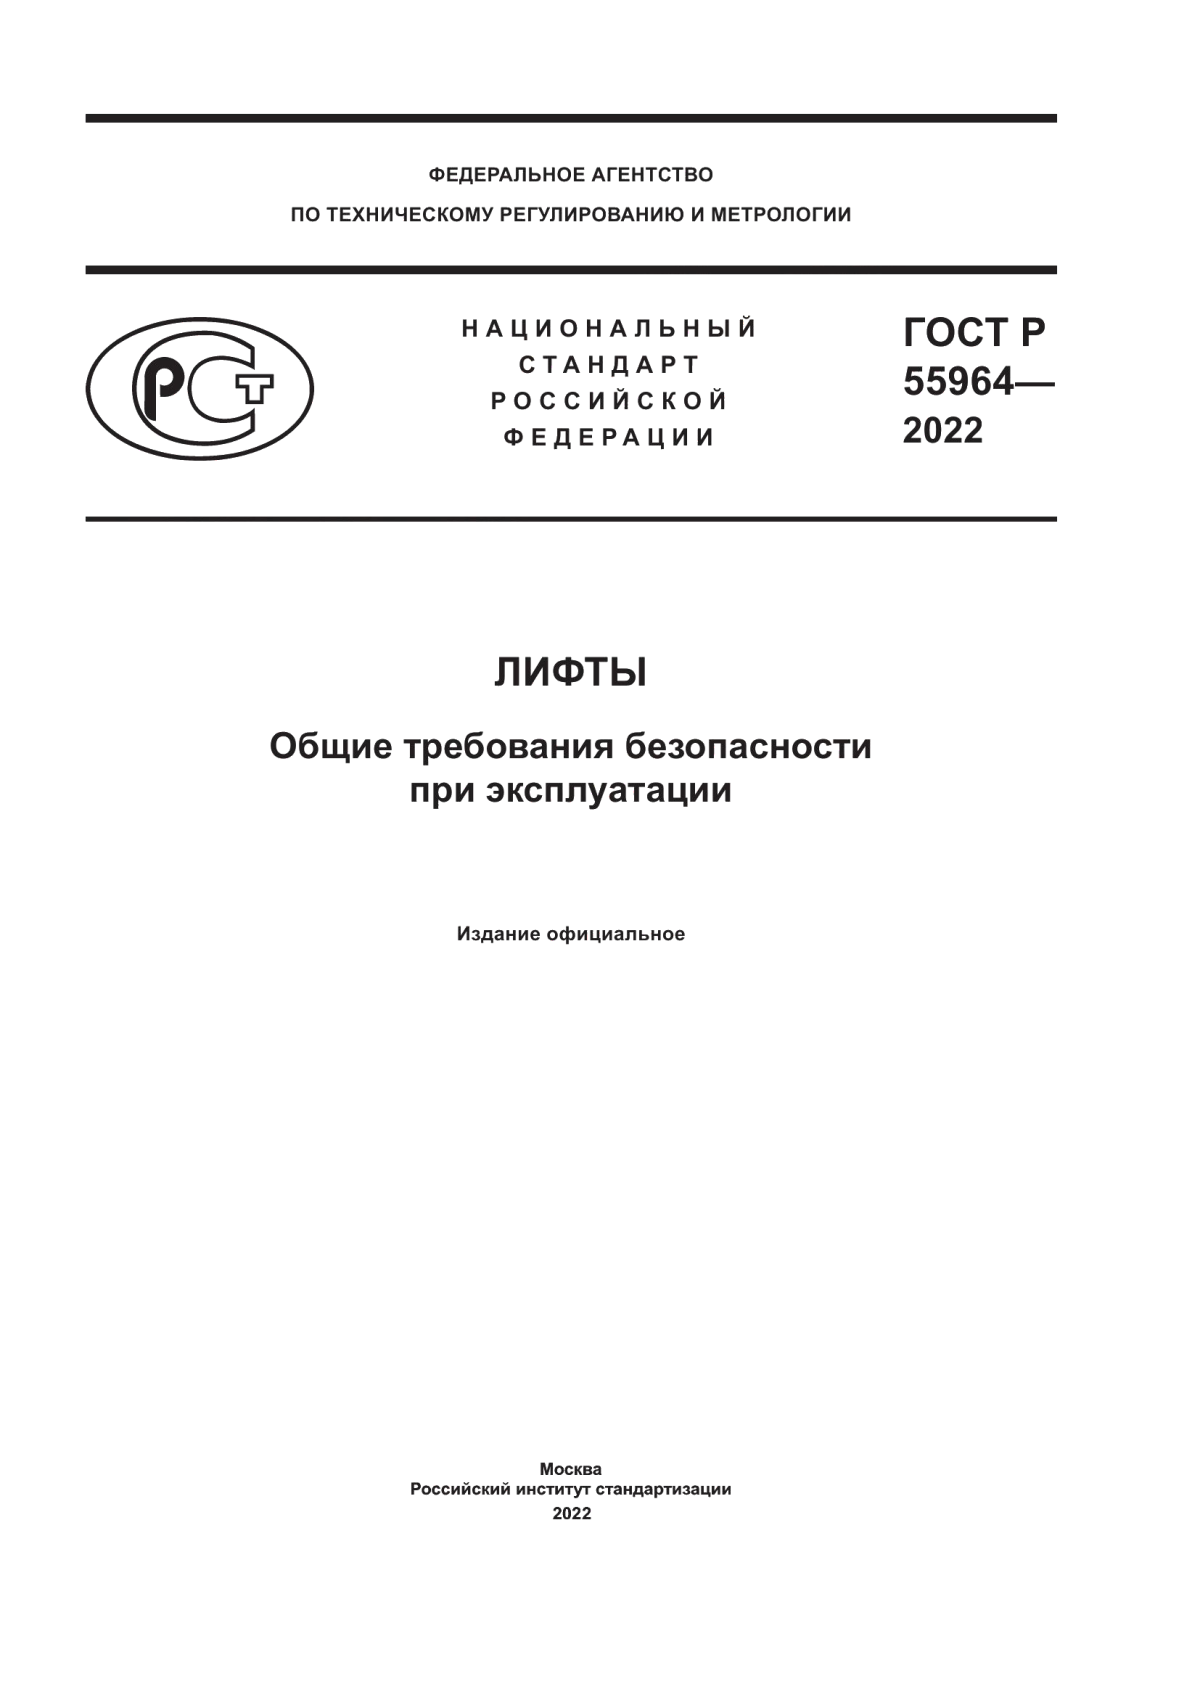 ГОСТ Р 55964-2022 Лифты. Общие требования безопасности при эксплуатации